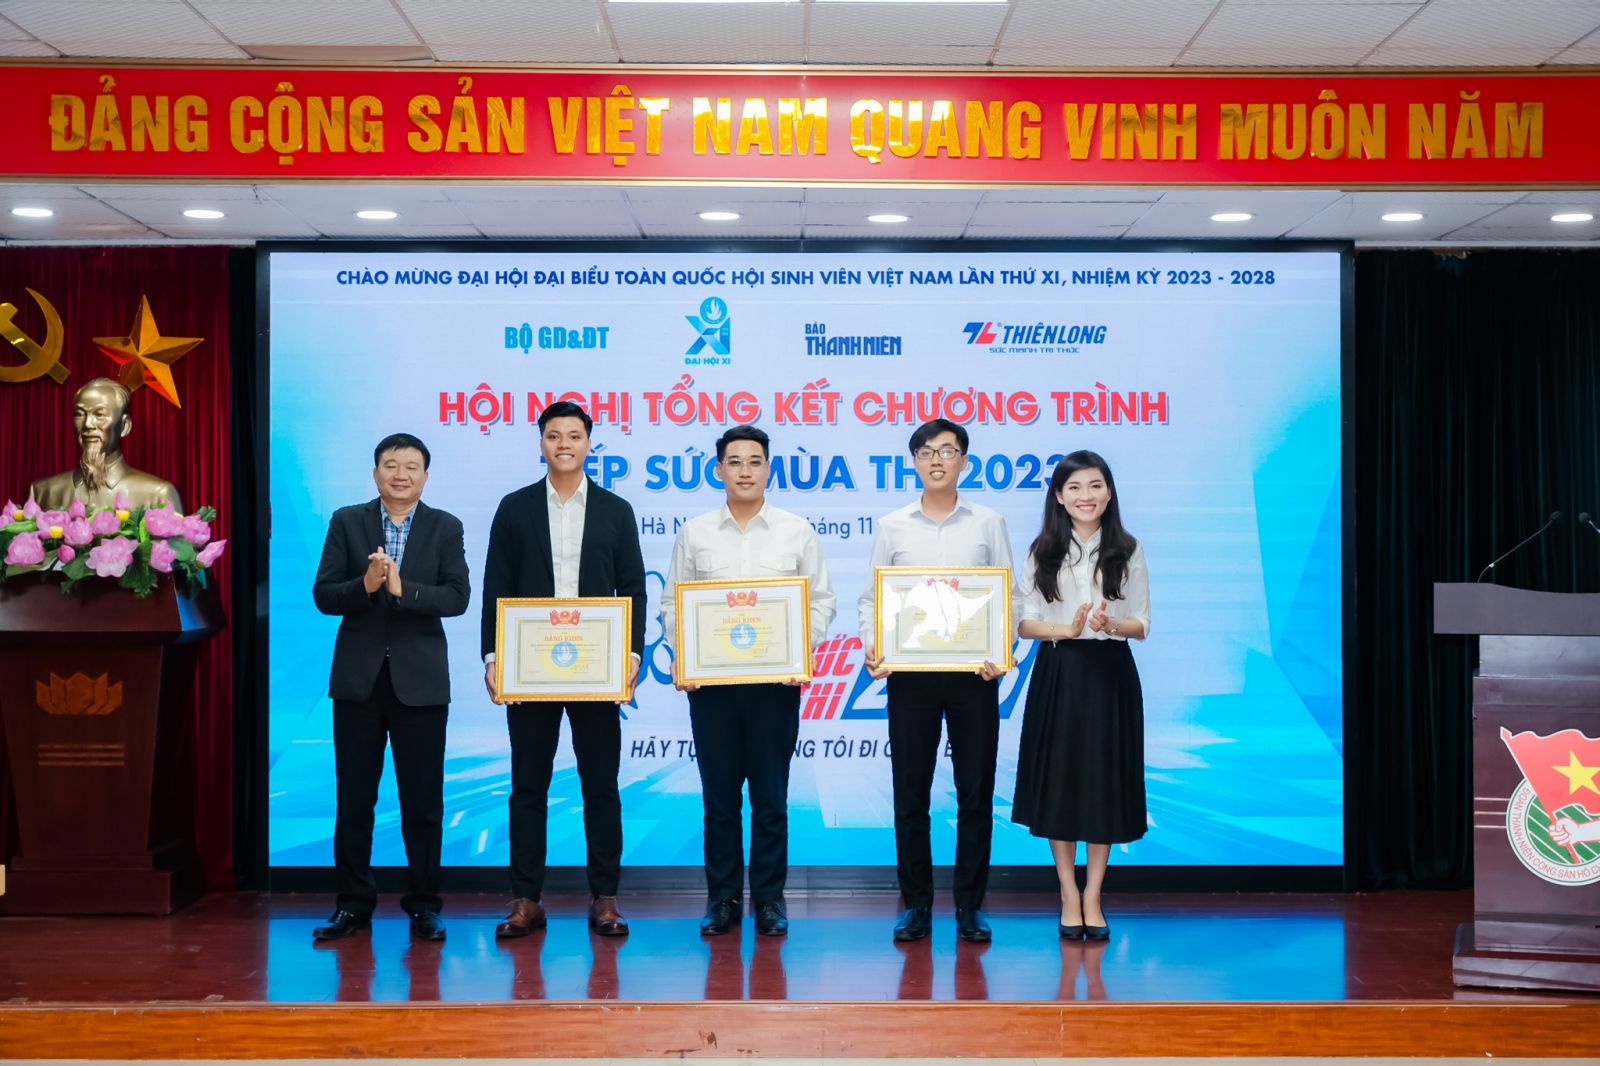 Hội Sinh viên Việt Nam tỉnh Hưng Yên nhận bằng khen vì có thành tích xuất sắc trong Chương trình Tiếp sức mùa thi năm 2023